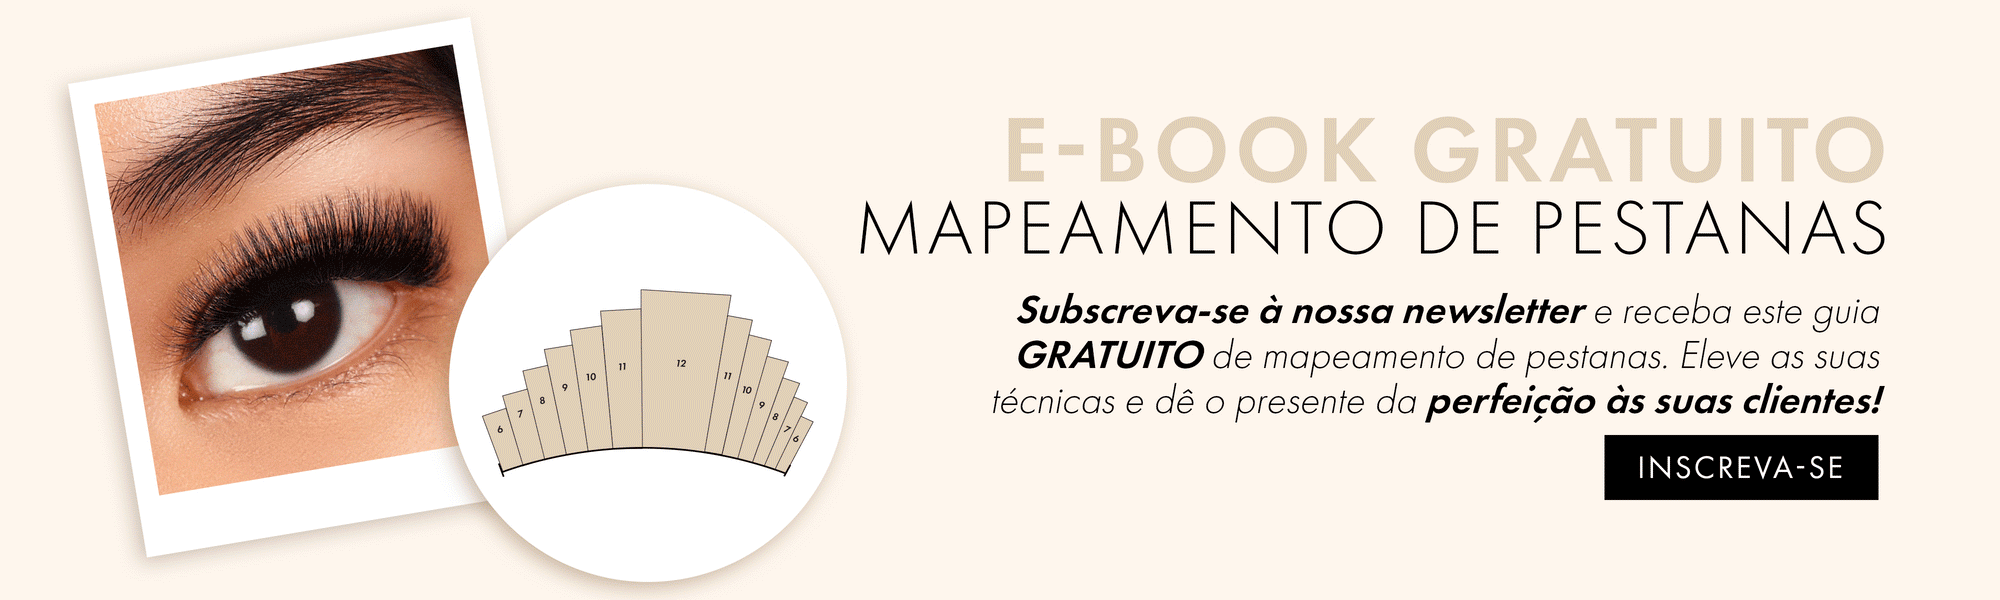 EBook Gratuito Mapeamento De Pestanas